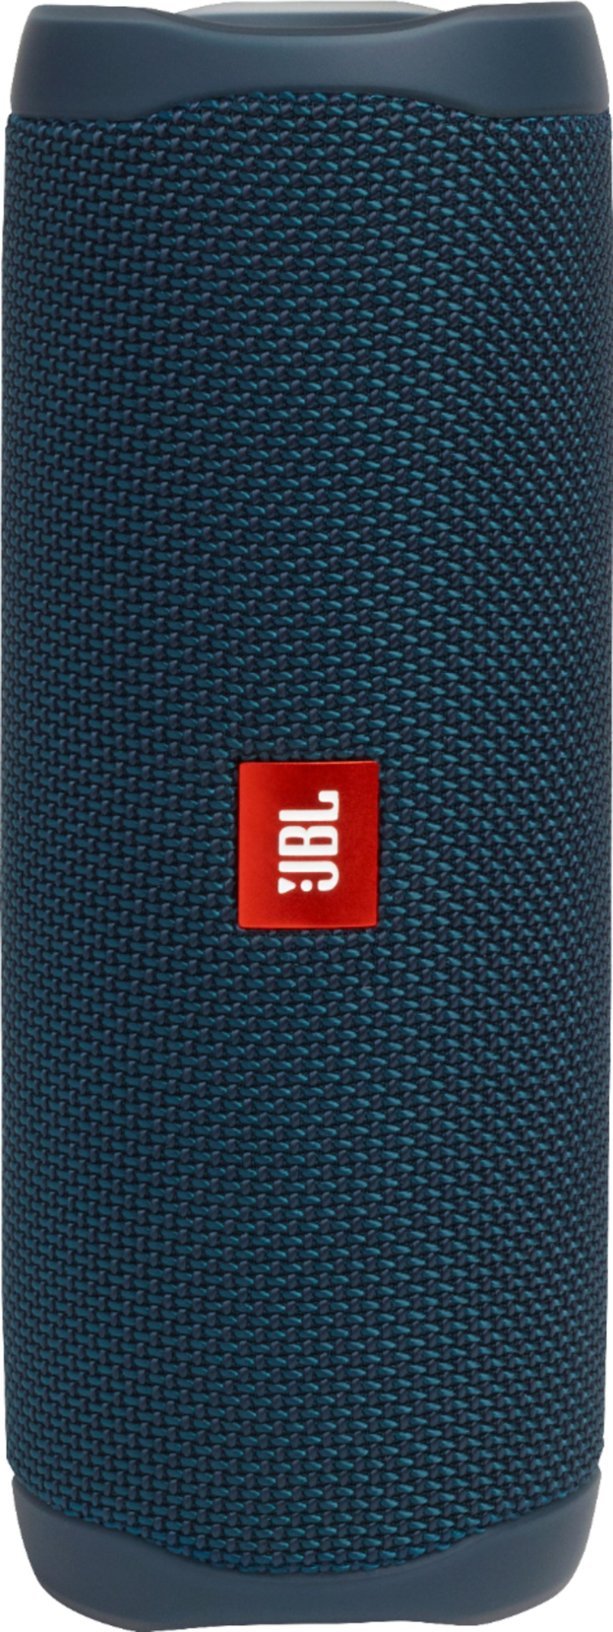 JBL Flip 5 Waterproof Wireless Portable Speaker - Ocean Blue (New)